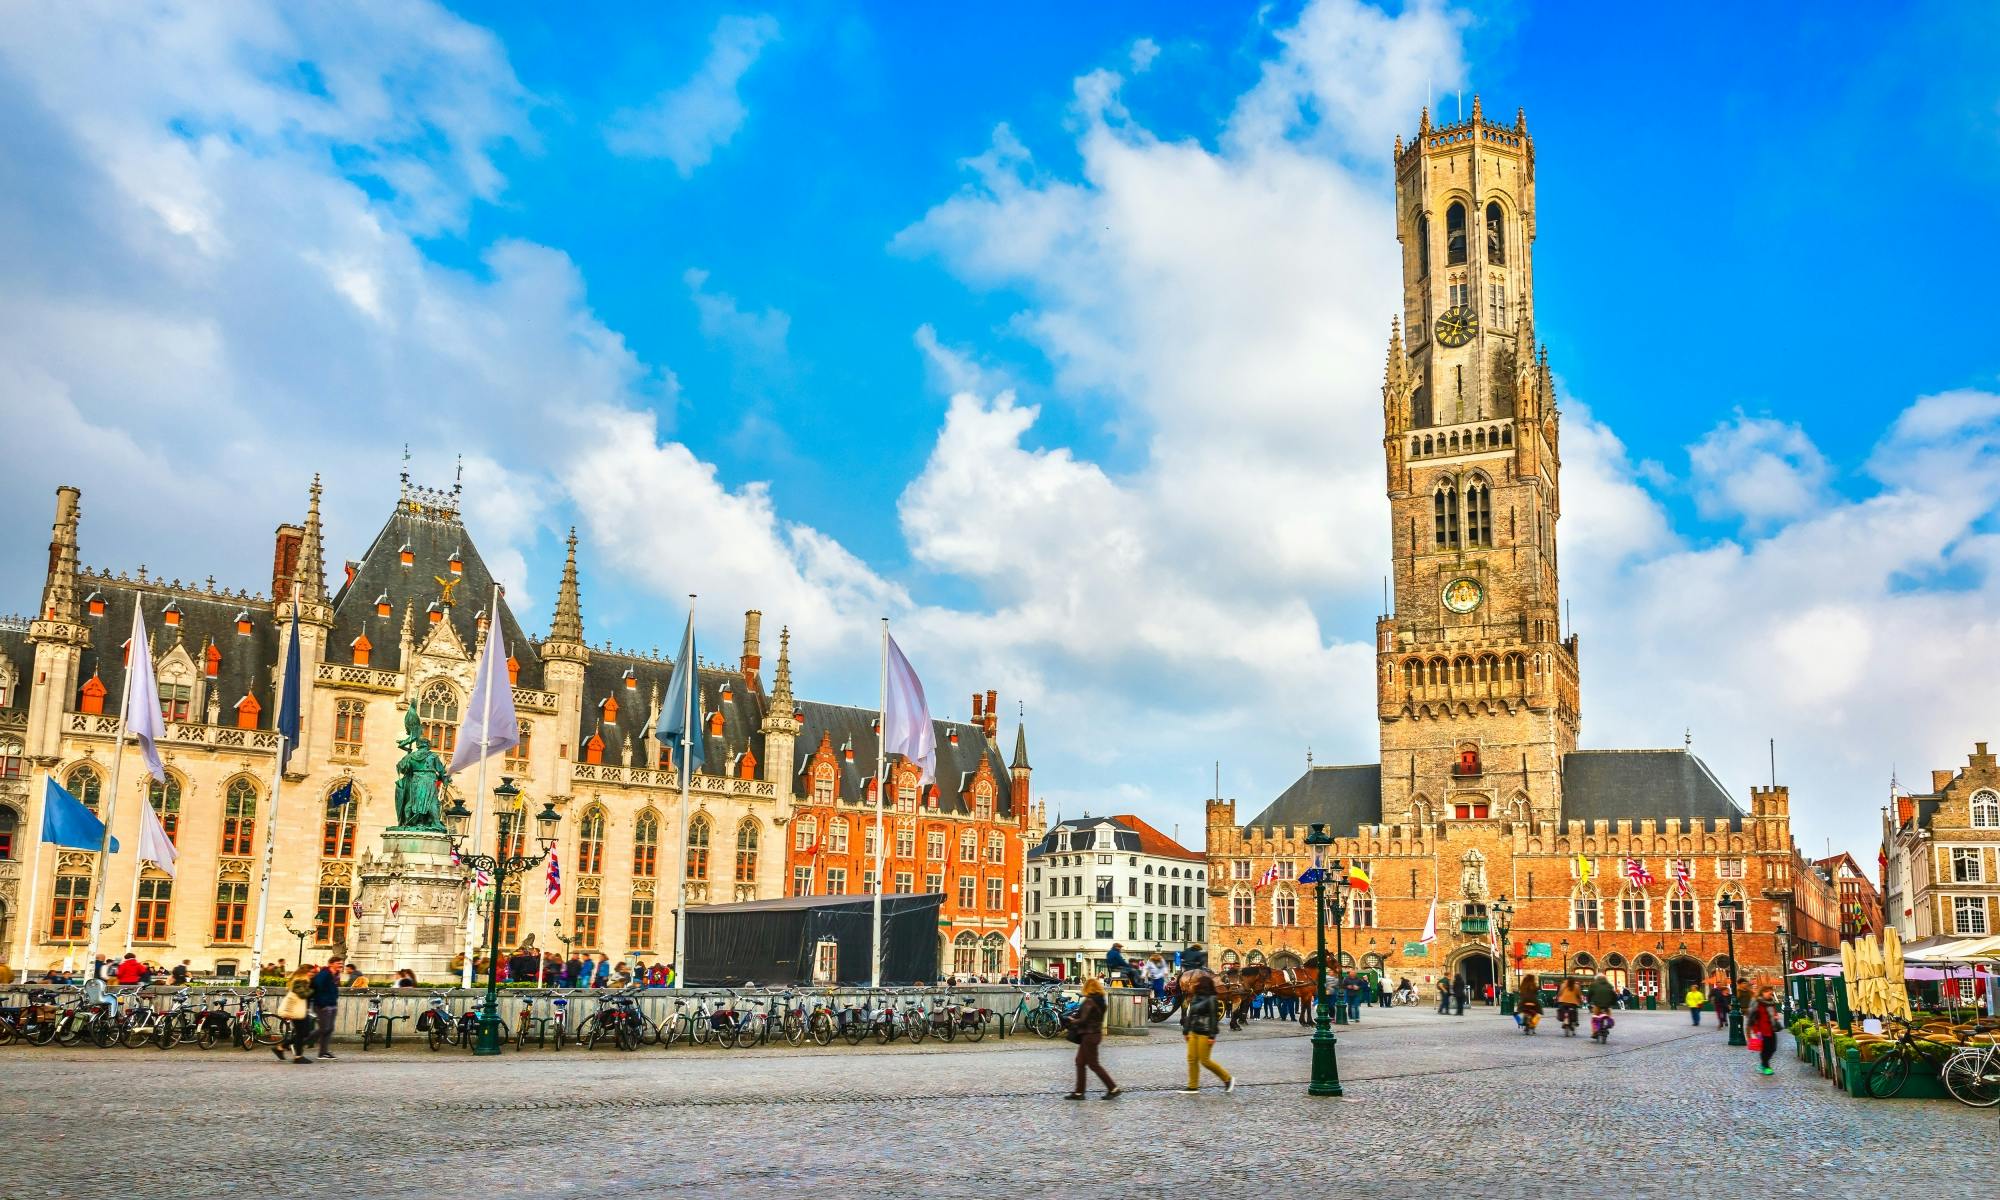 Escape game urbain : découvrez les secrets de Bruges